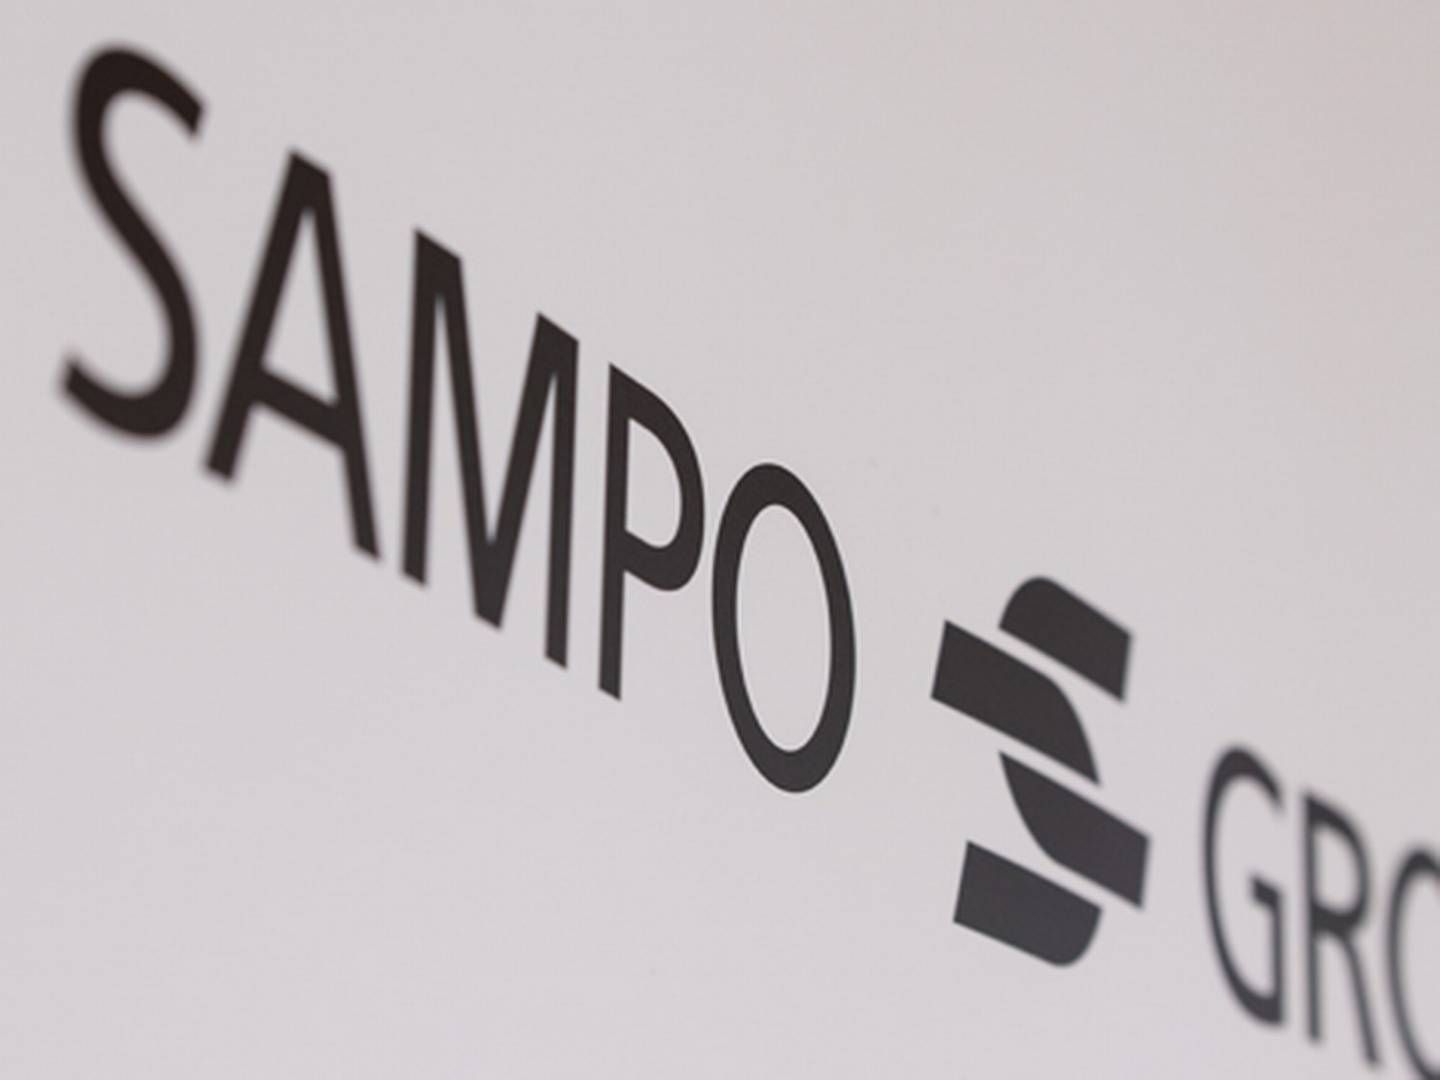 Det finske konsernet Sampo vil selge seg ned i Nordea for å investere mer i forsikring. | Foto: Sampo PR